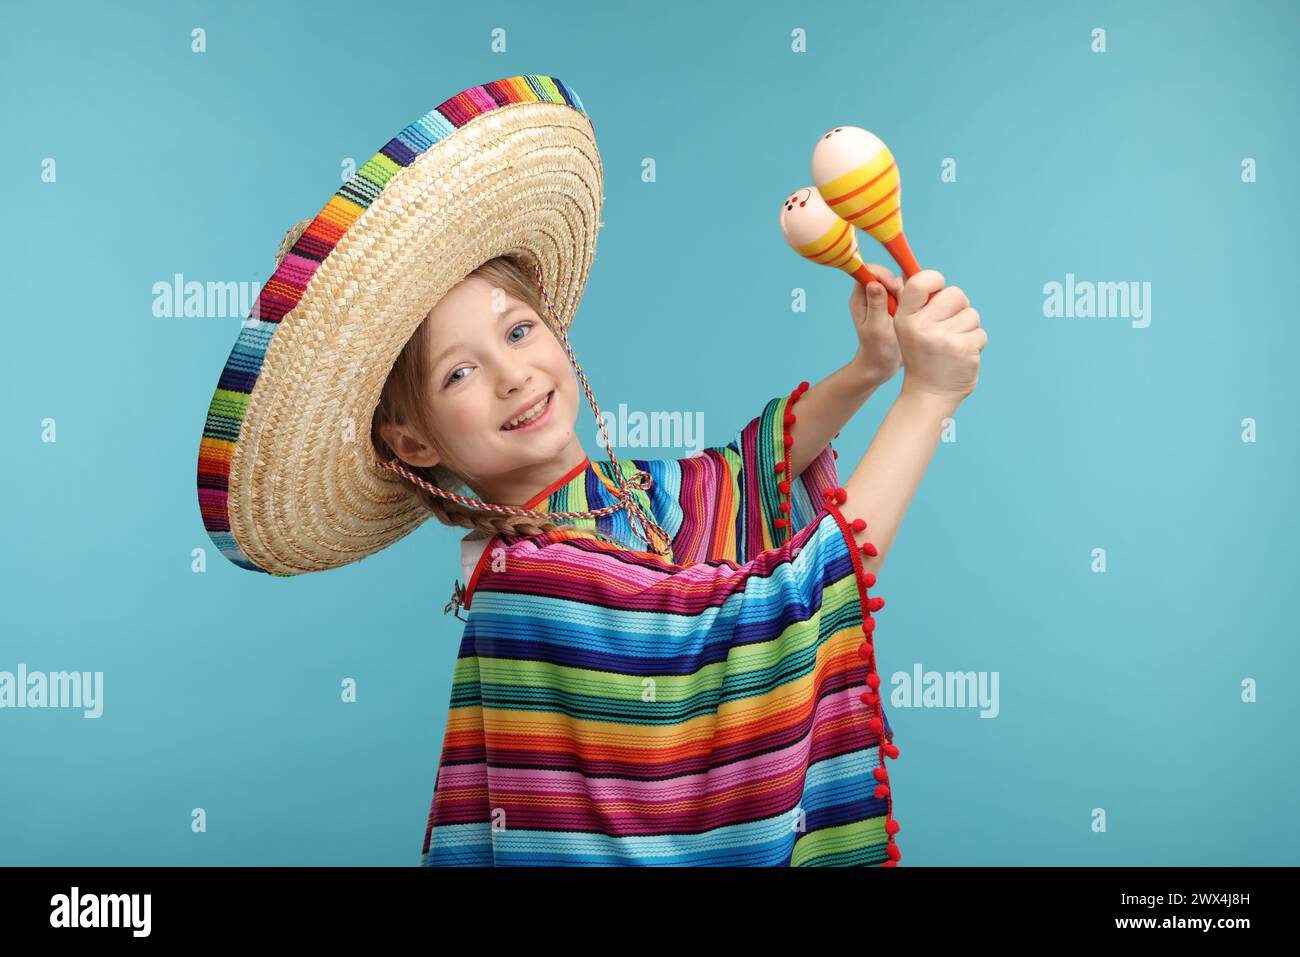 Fille mignonne dans le chapeau sombrero mexicain et poncho dansant avec des maracas sur fond bleu clair Banque D'Images